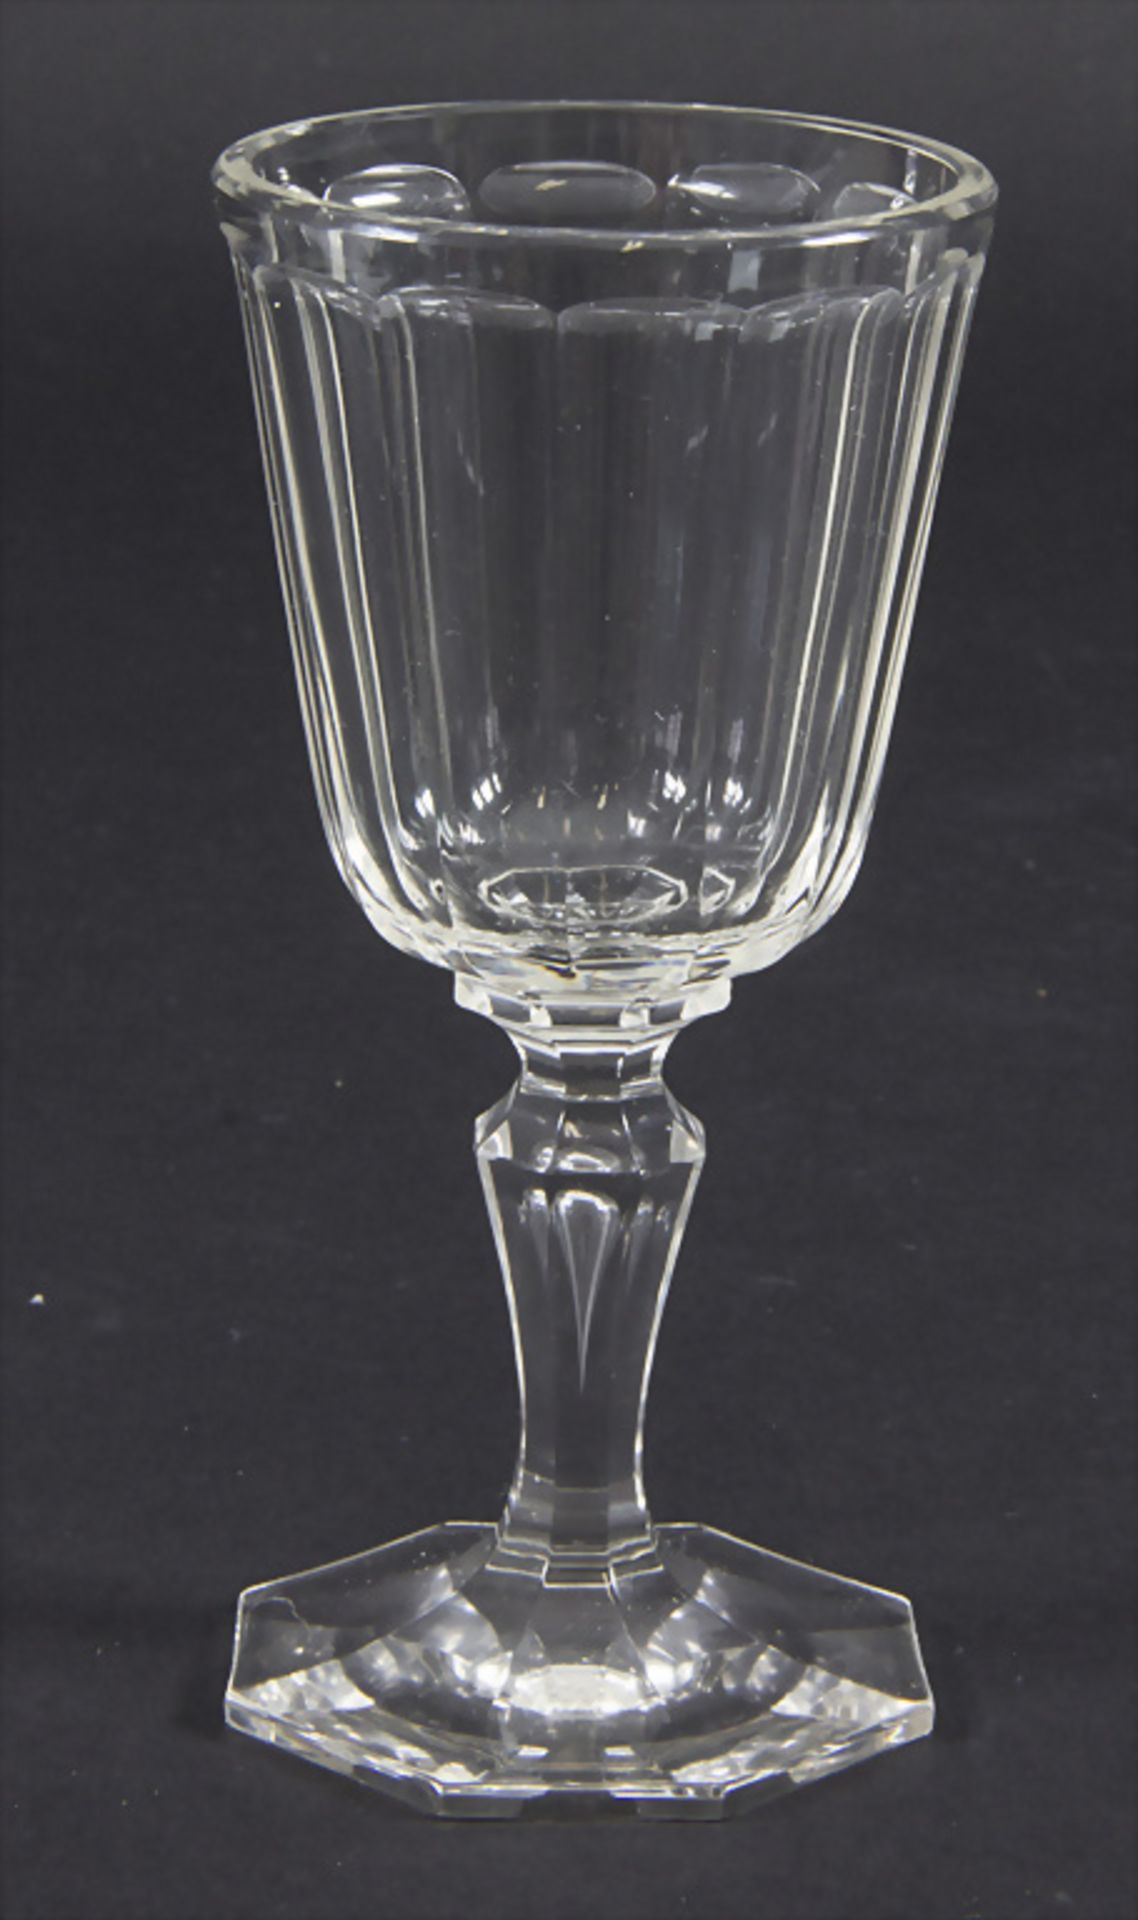 Weißweinglas / A white wine glass, J. & L. Lobmeyr, Wien, um 1900 - Bild 2 aus 4